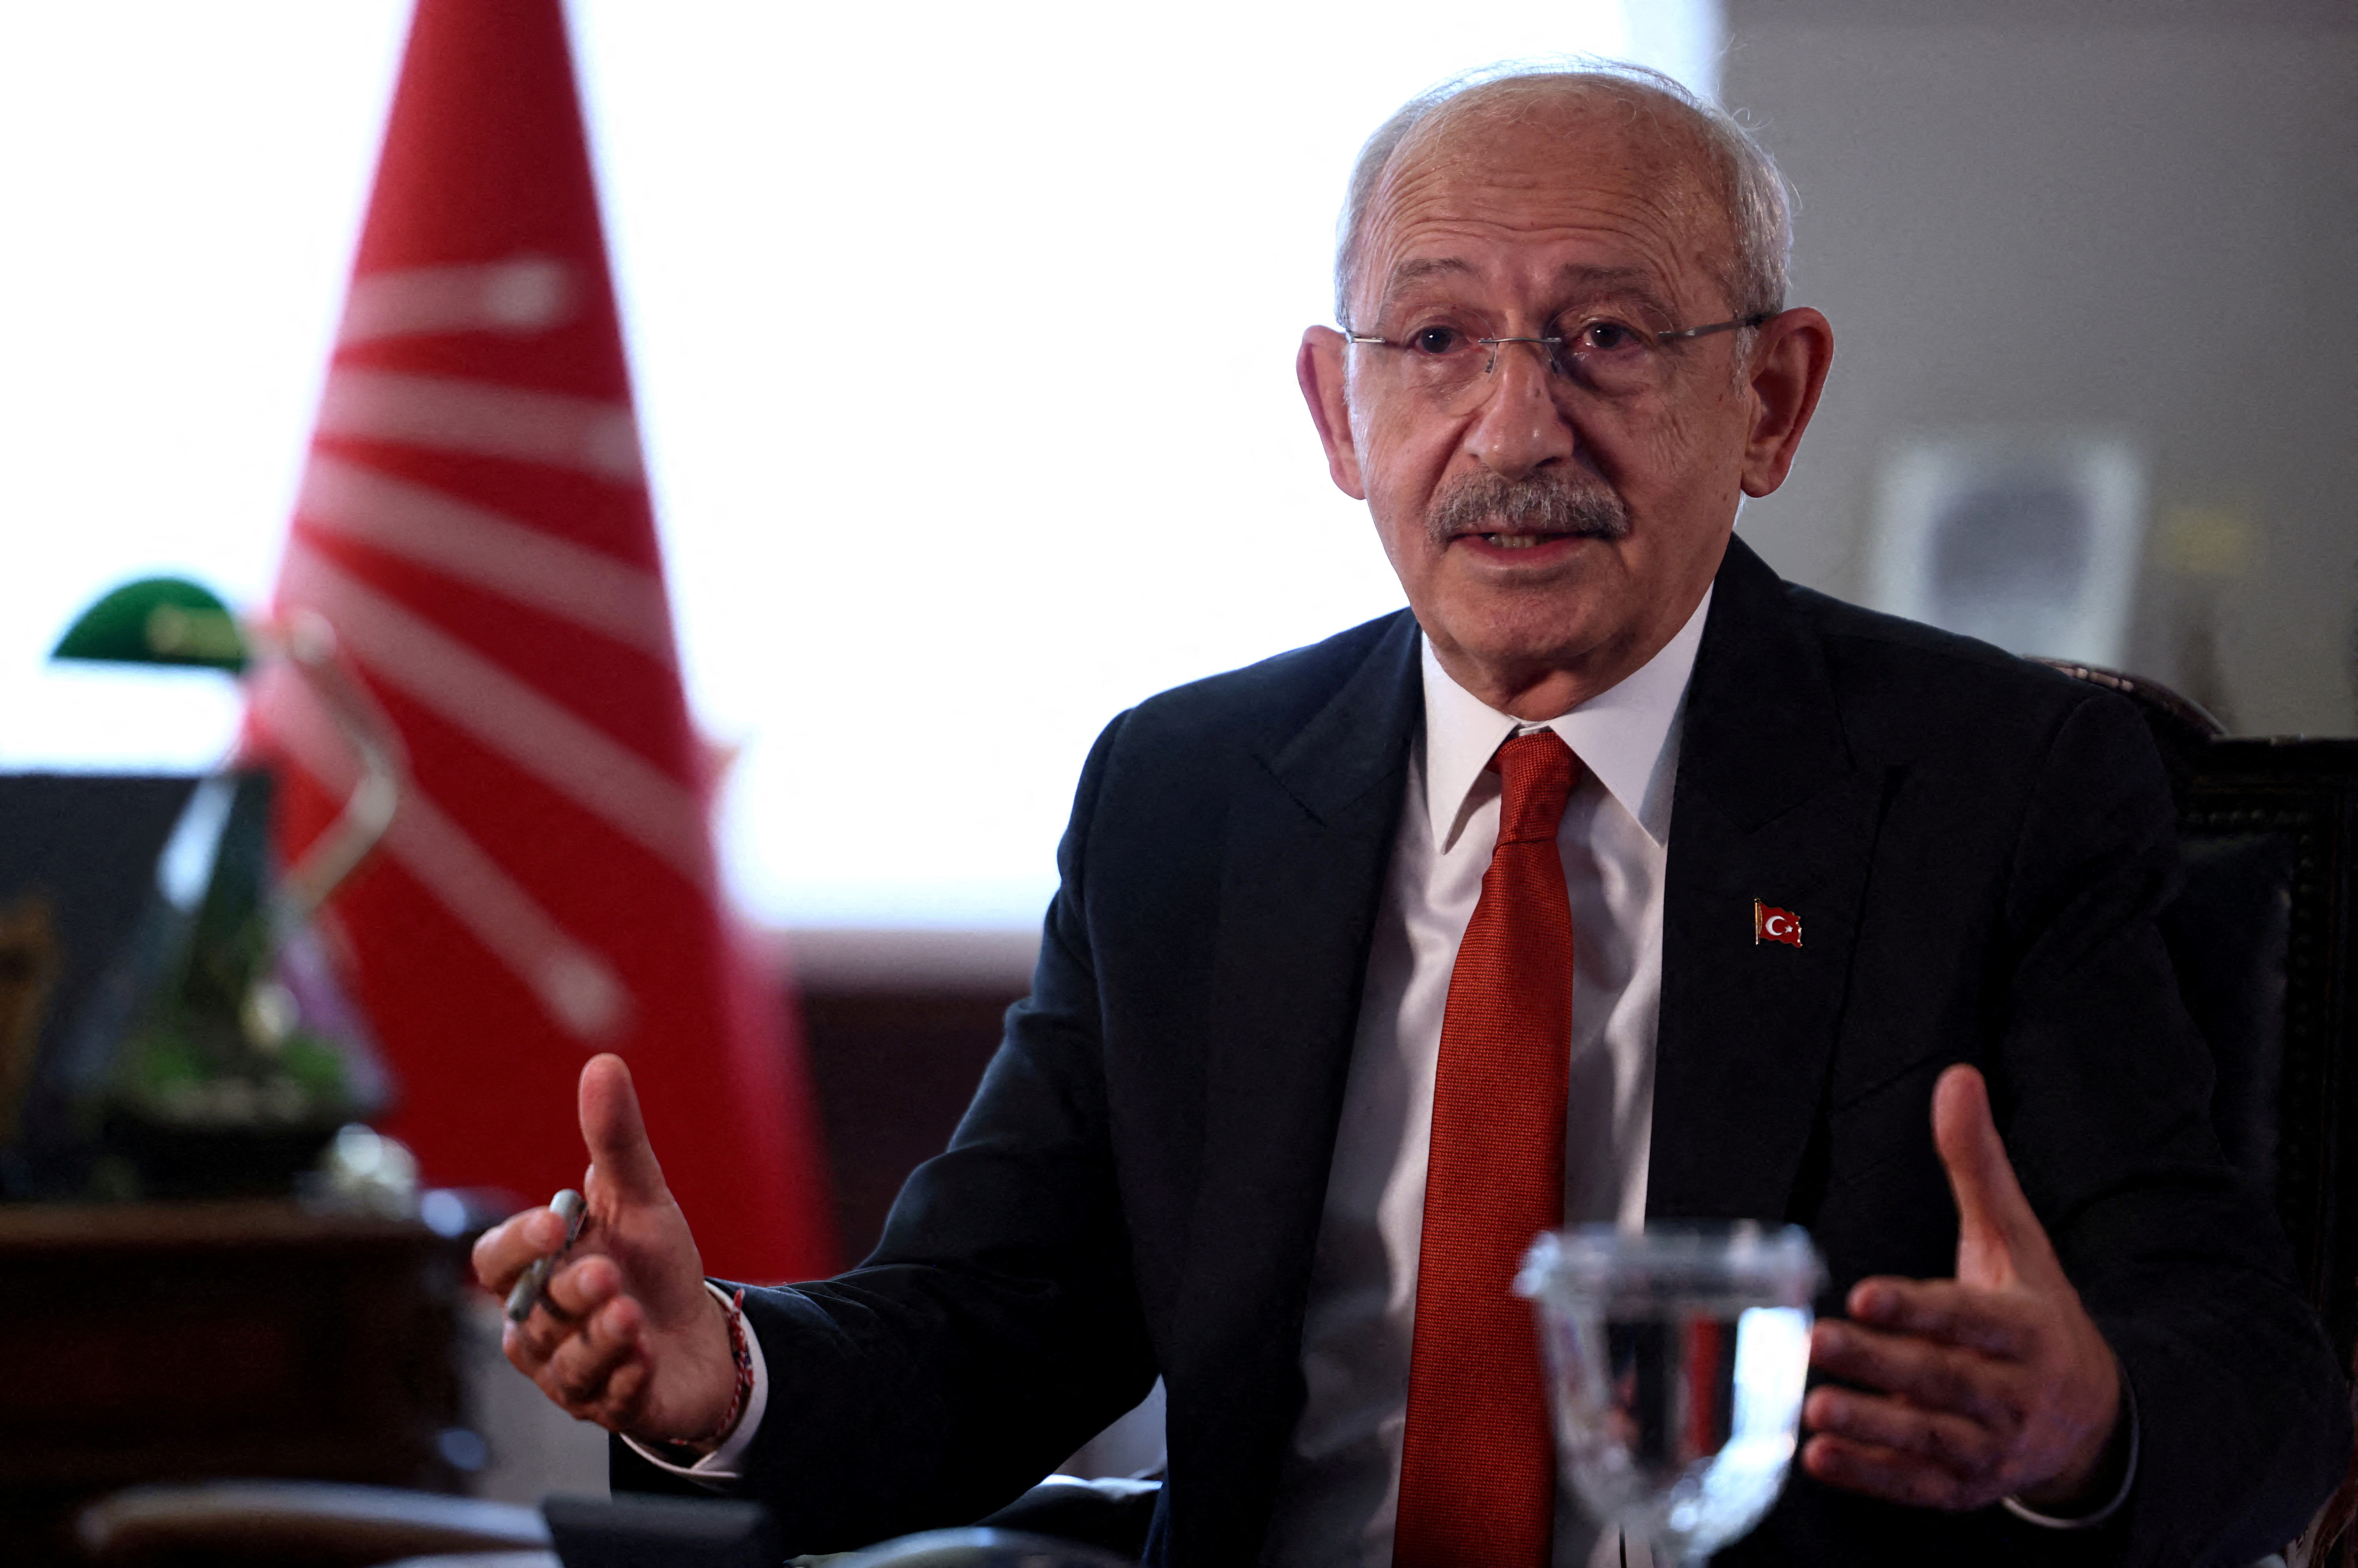 Εκλογές στην Τουρκία: Ο Κιλιτσντάρογλου κατηγορεί τις αρχές πως του απαγόρευσαν προεκλογικά sms